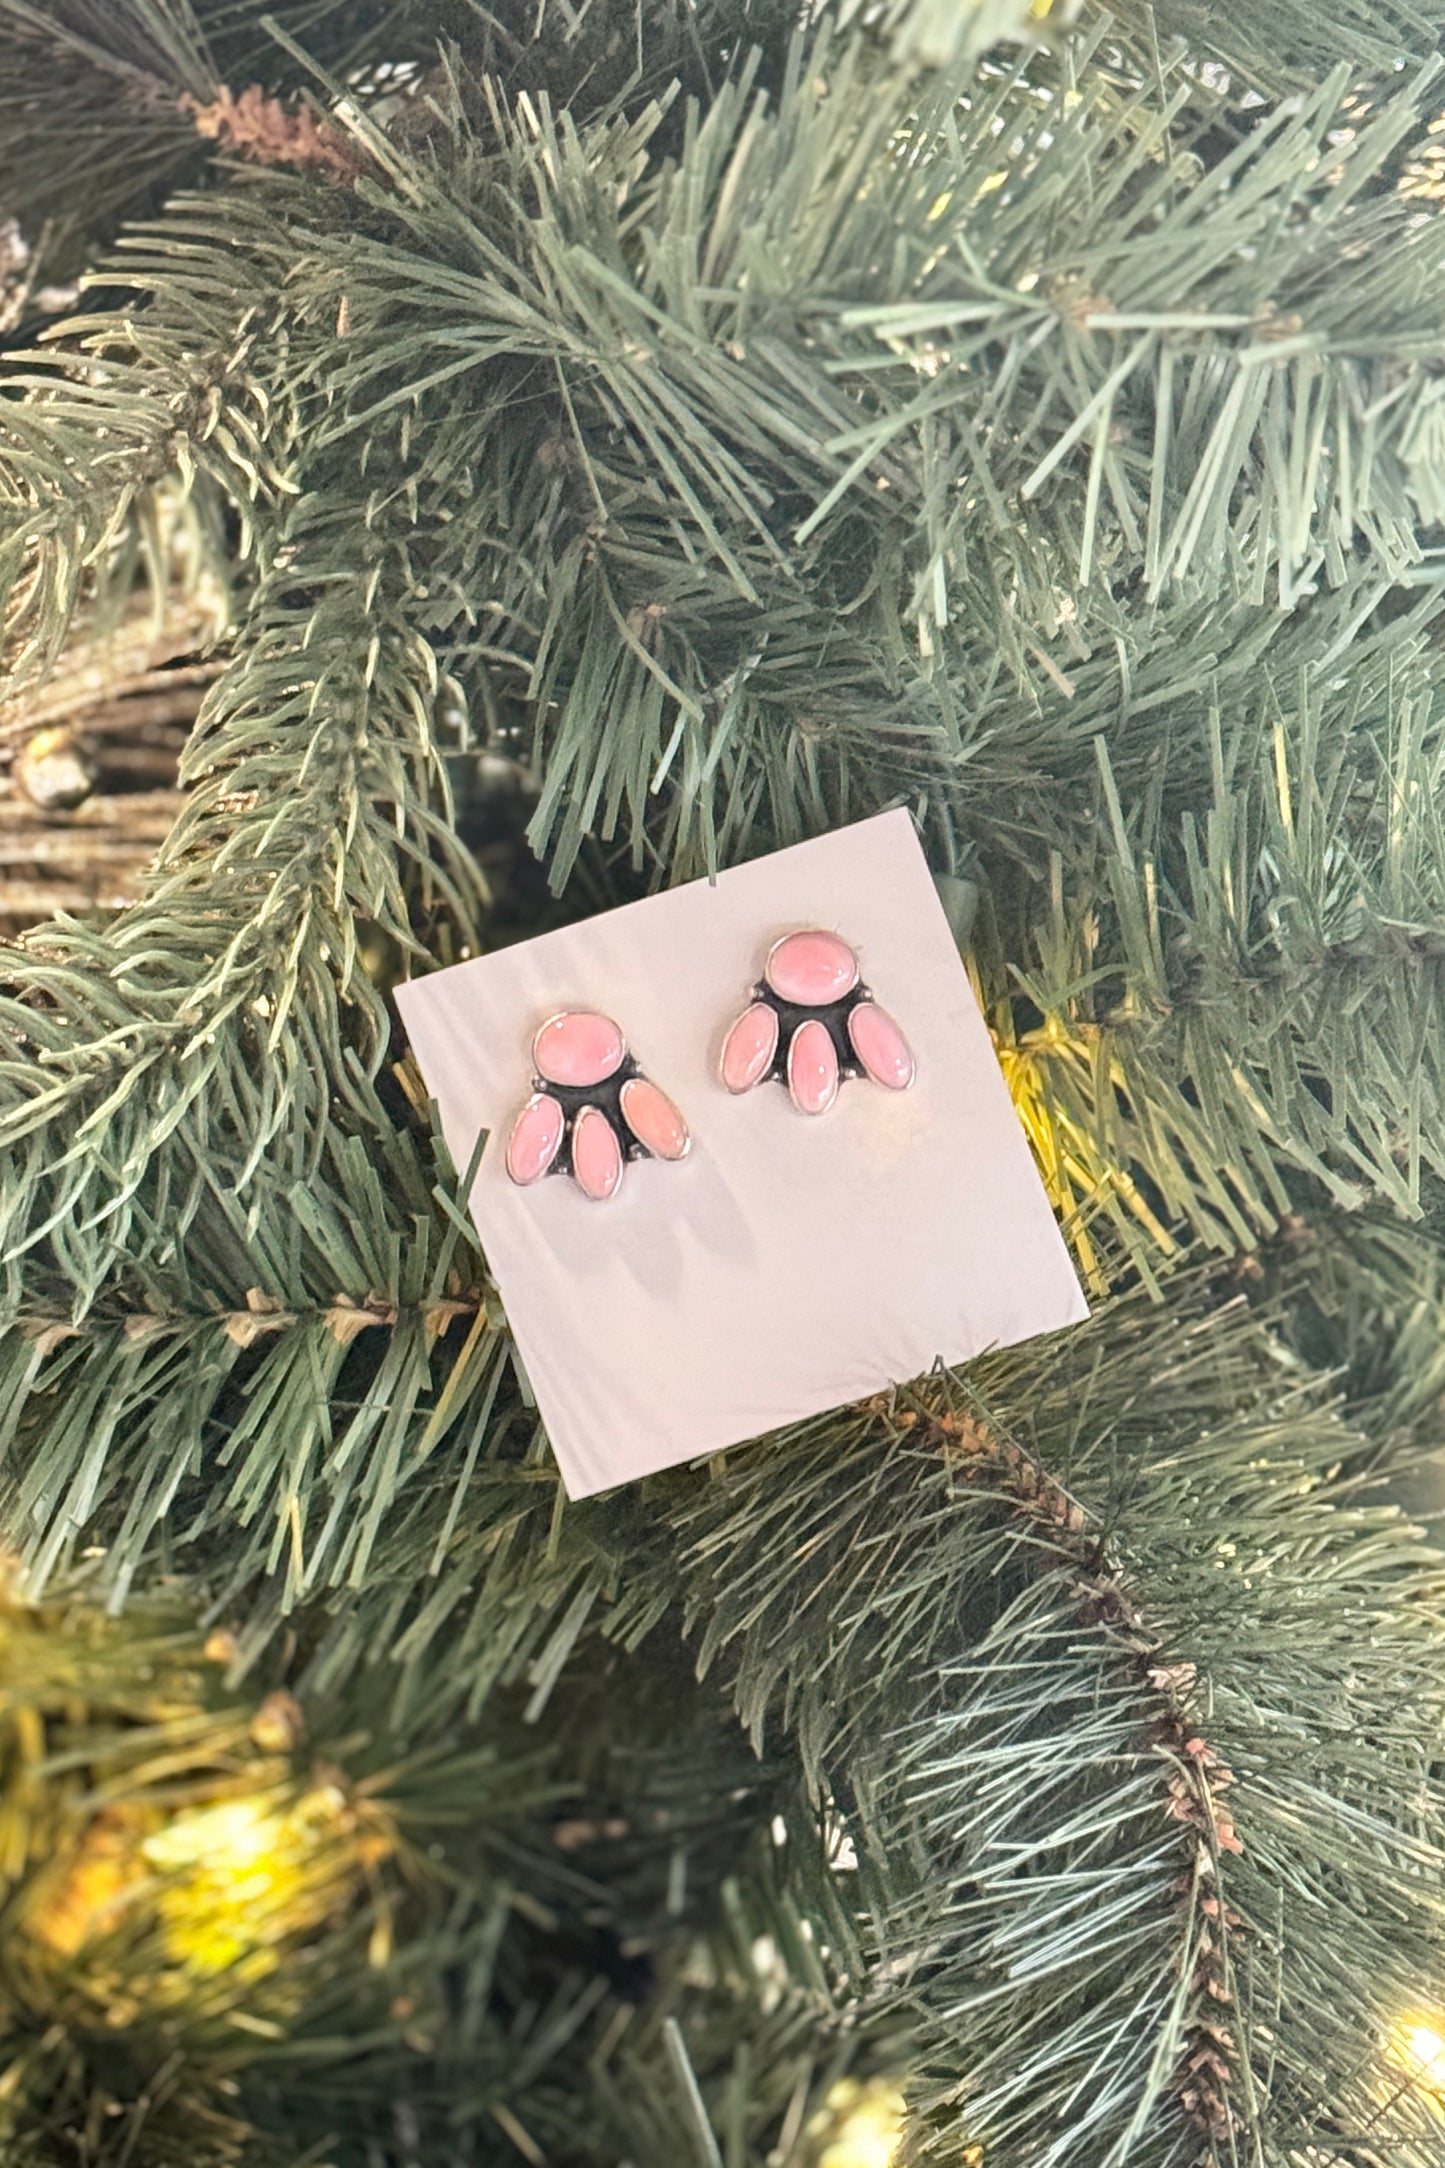 Pink Cluster Earrings